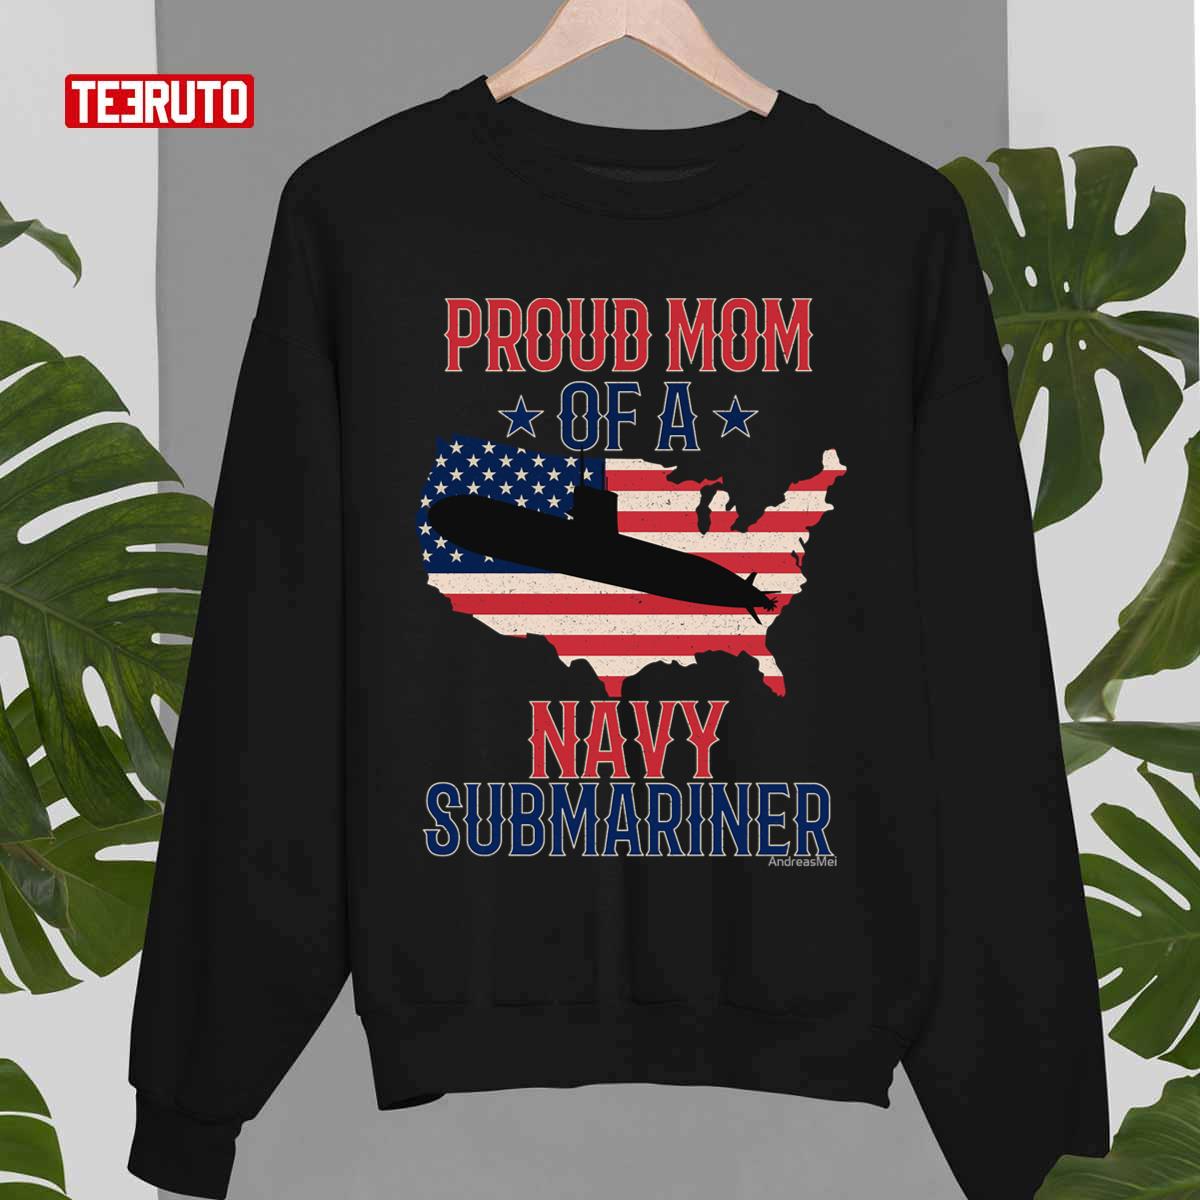 Submariner Submarines Veteran Military Proud Mom Of A Navy Submariner Submarine Day Unisex T-shirt